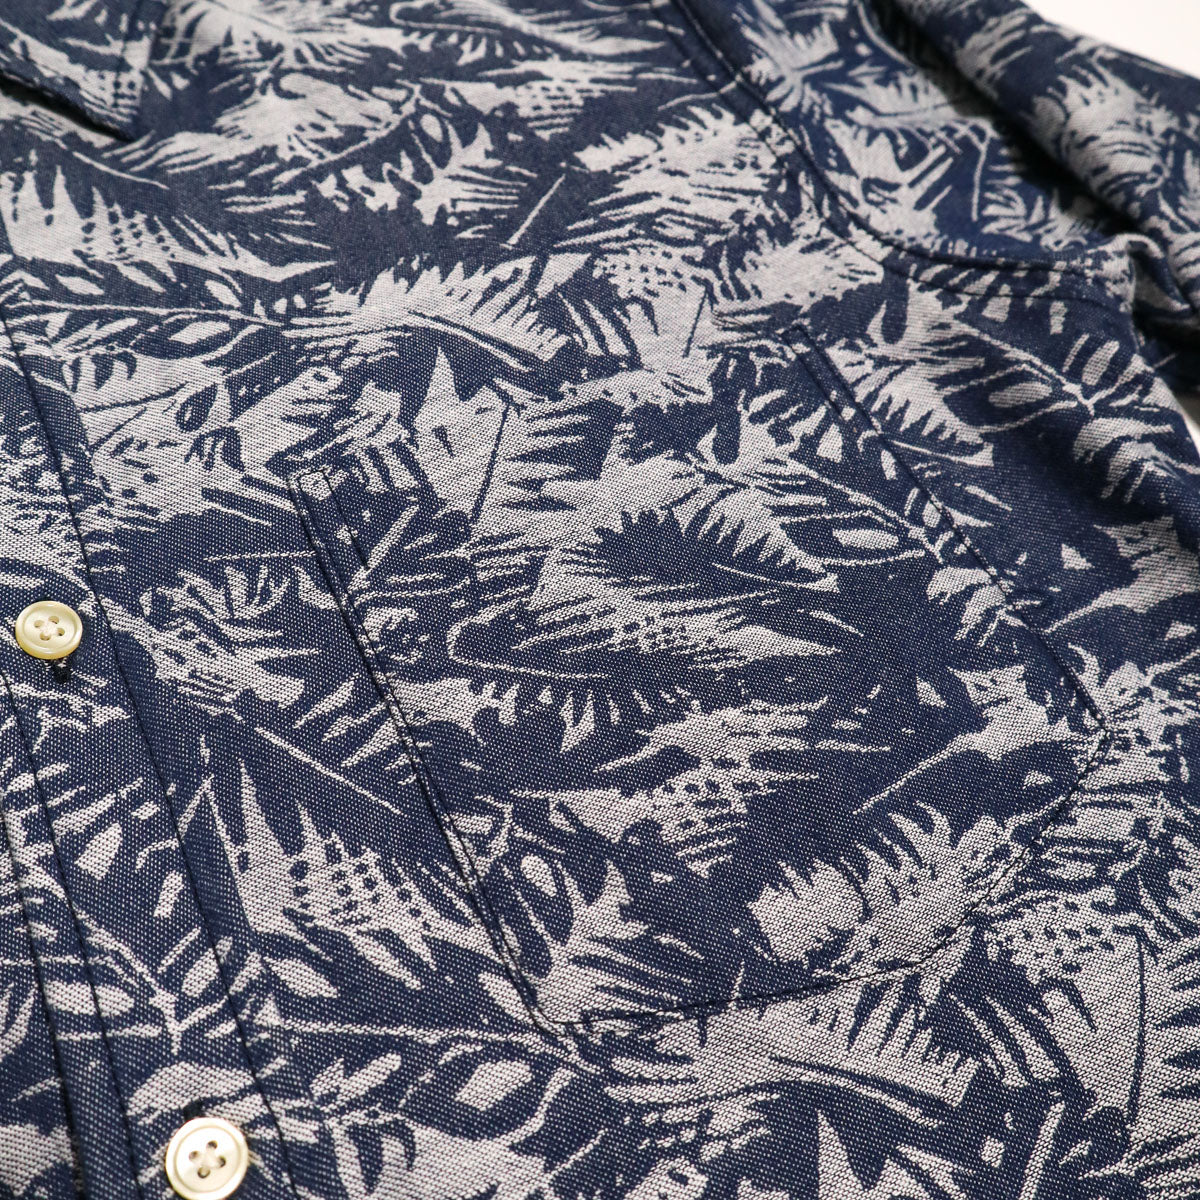 Oxford Shirt Indigo Palm Jacquard